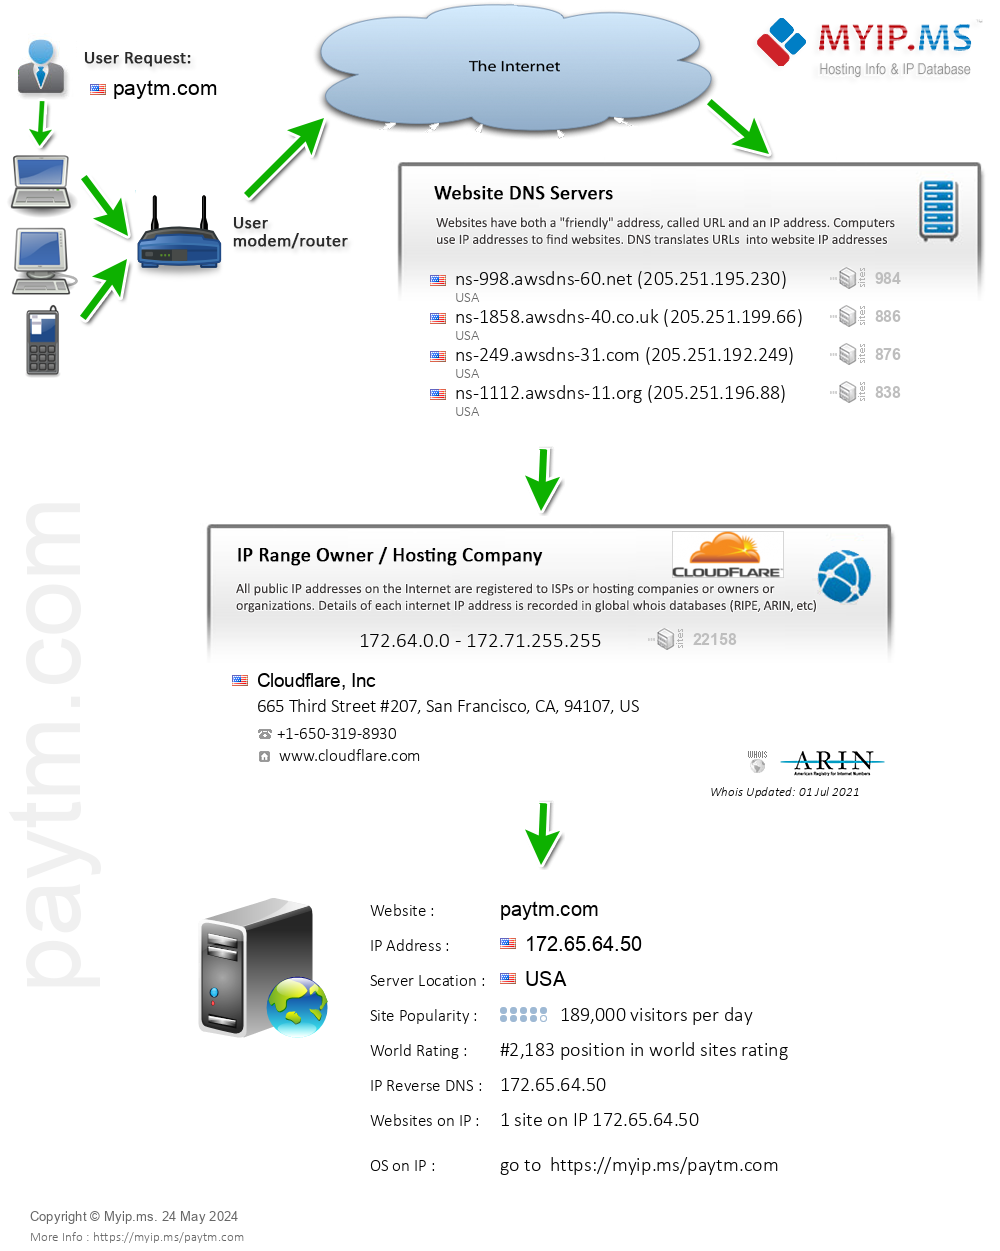 Paytm.com - Website Hosting Visual IP Diagram